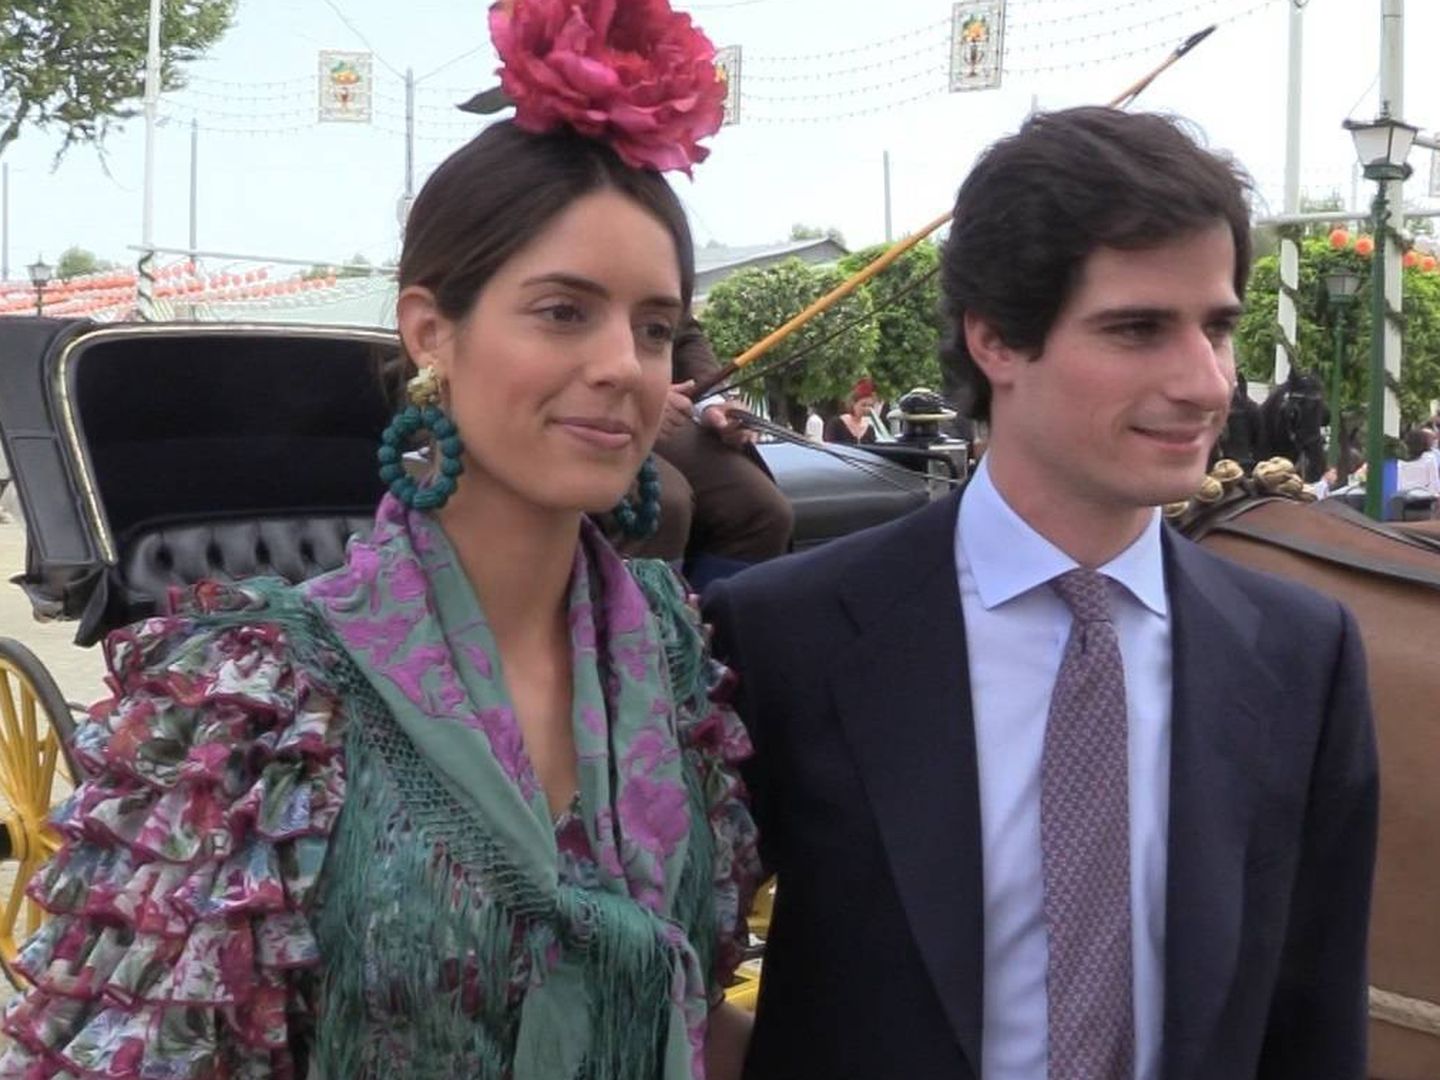 Sofía Palazuelo y el duque de Huéscar se casan el próximo fin de semana. (Cordon Press)